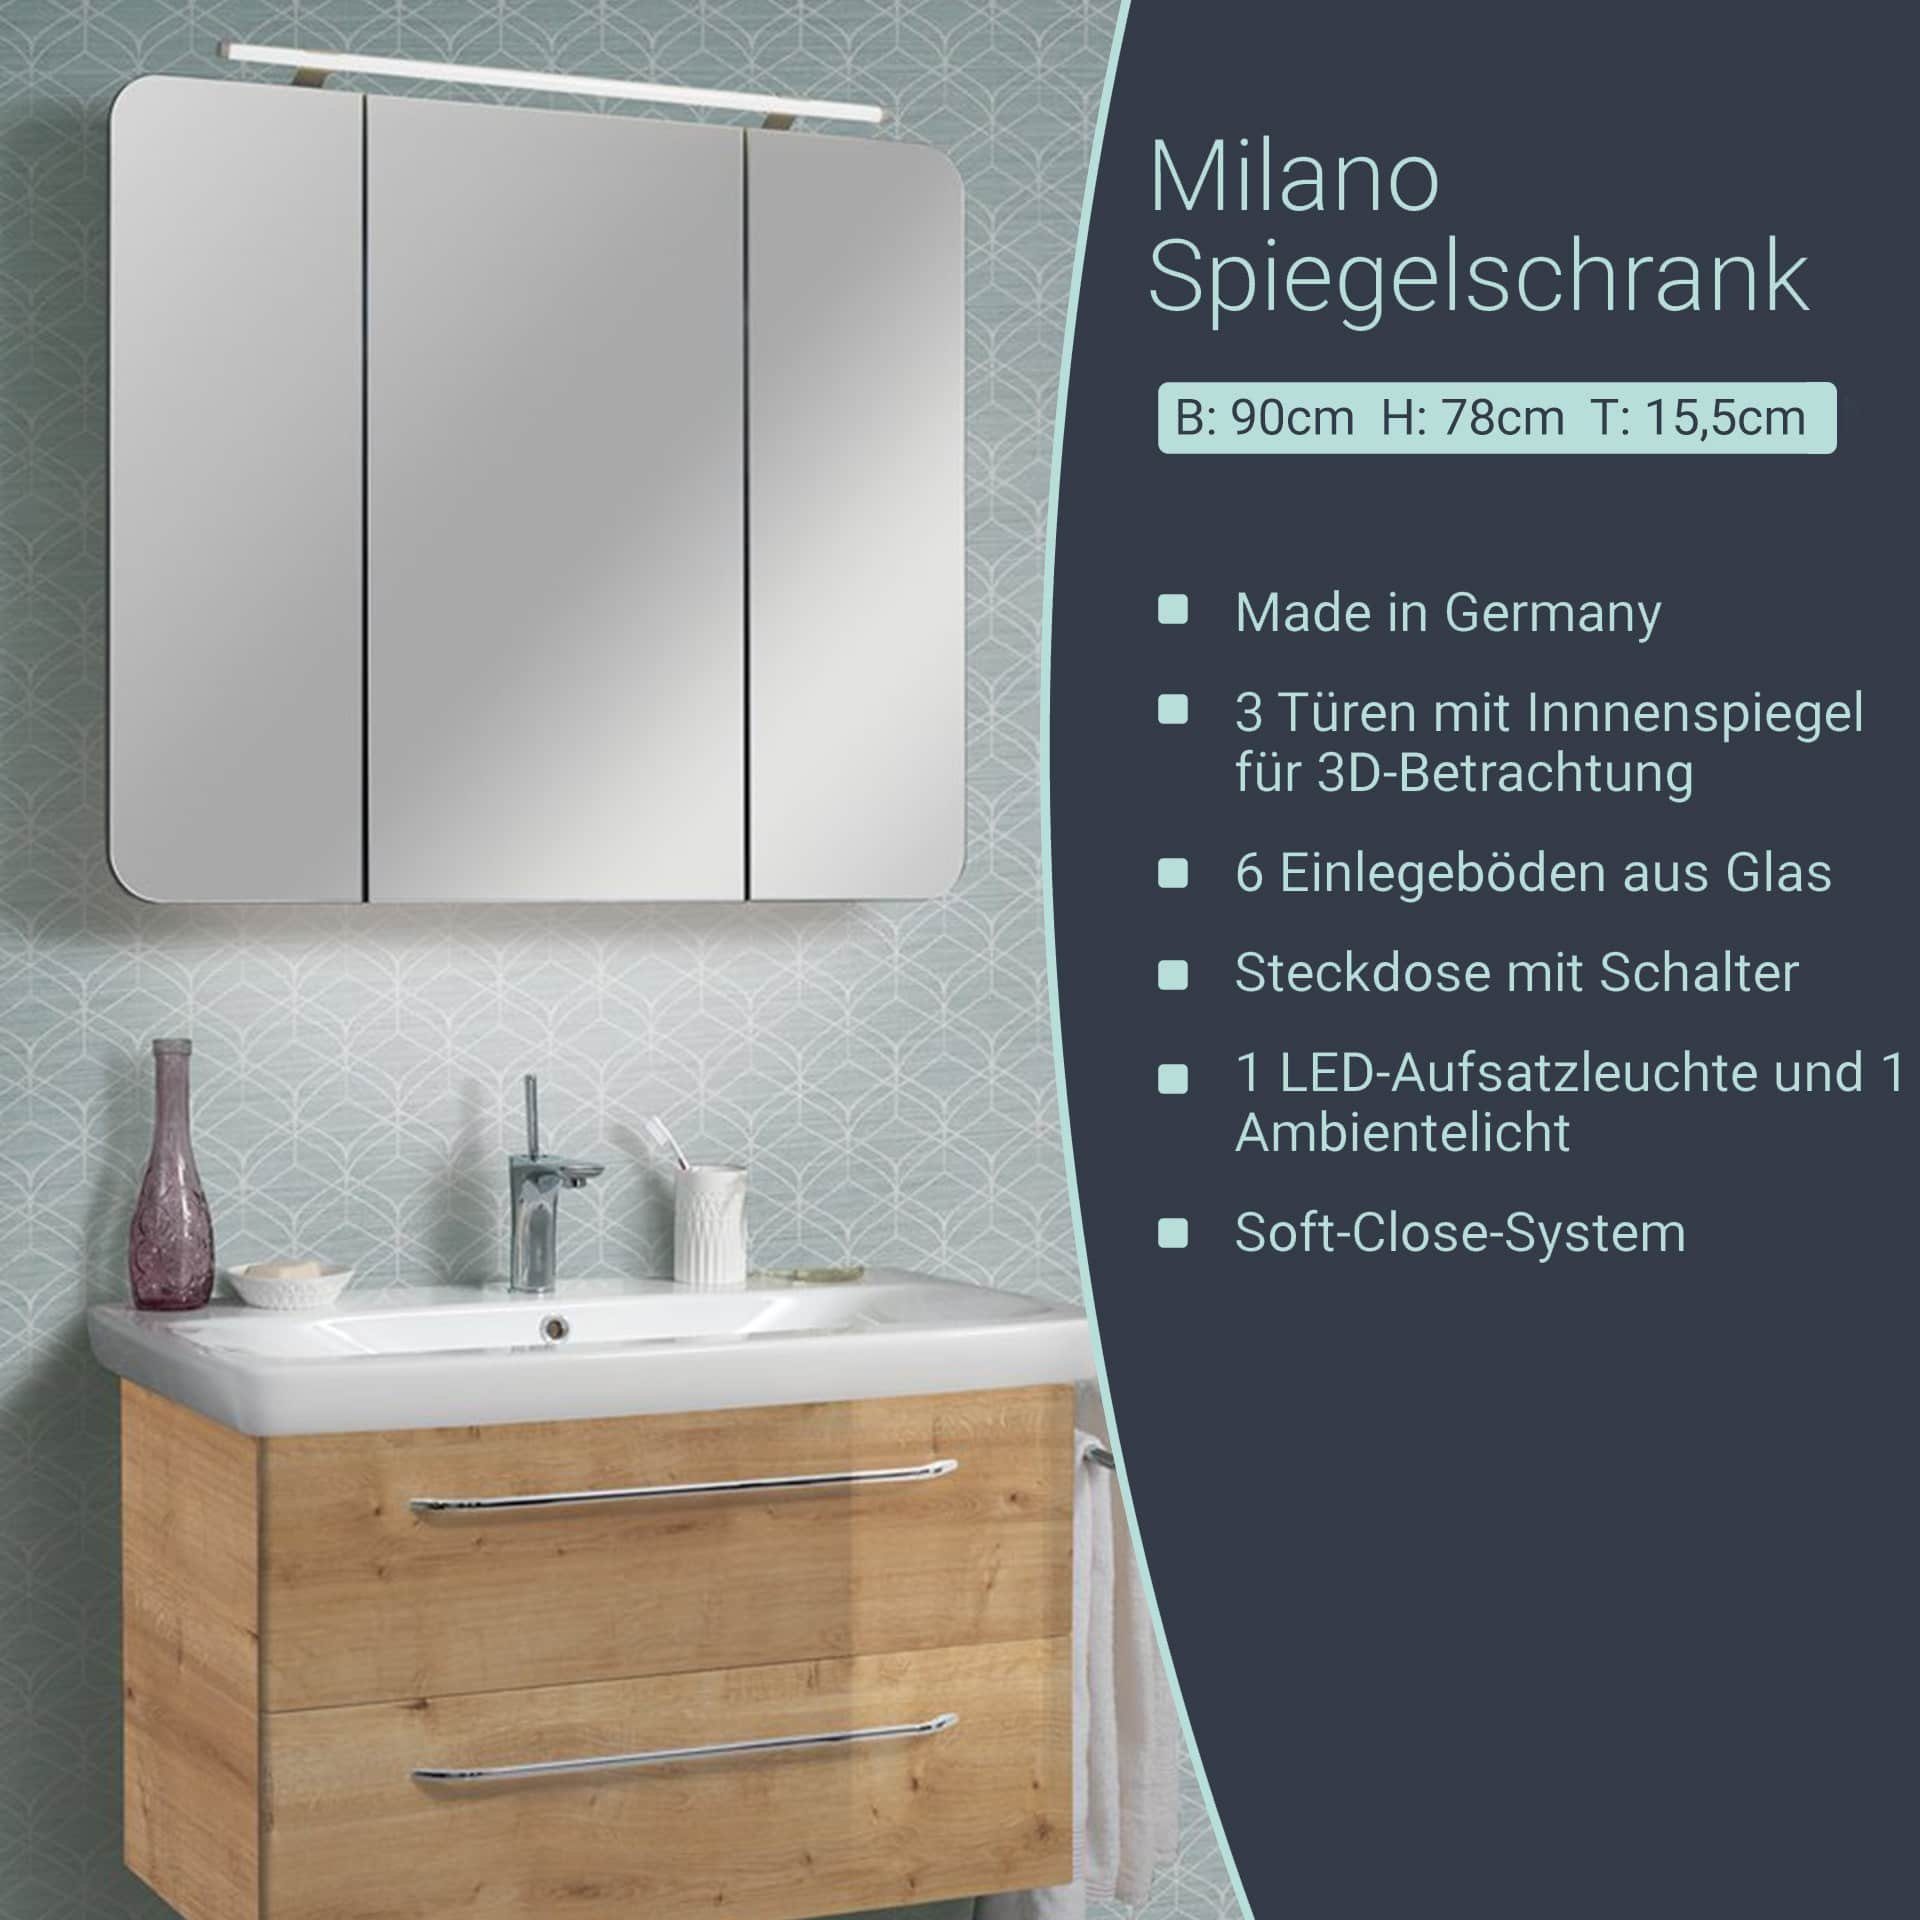 Spiegelschrank Badmöbel Steckdose, Schalter, Ambientebeleuchtung FACKELMANN Milano